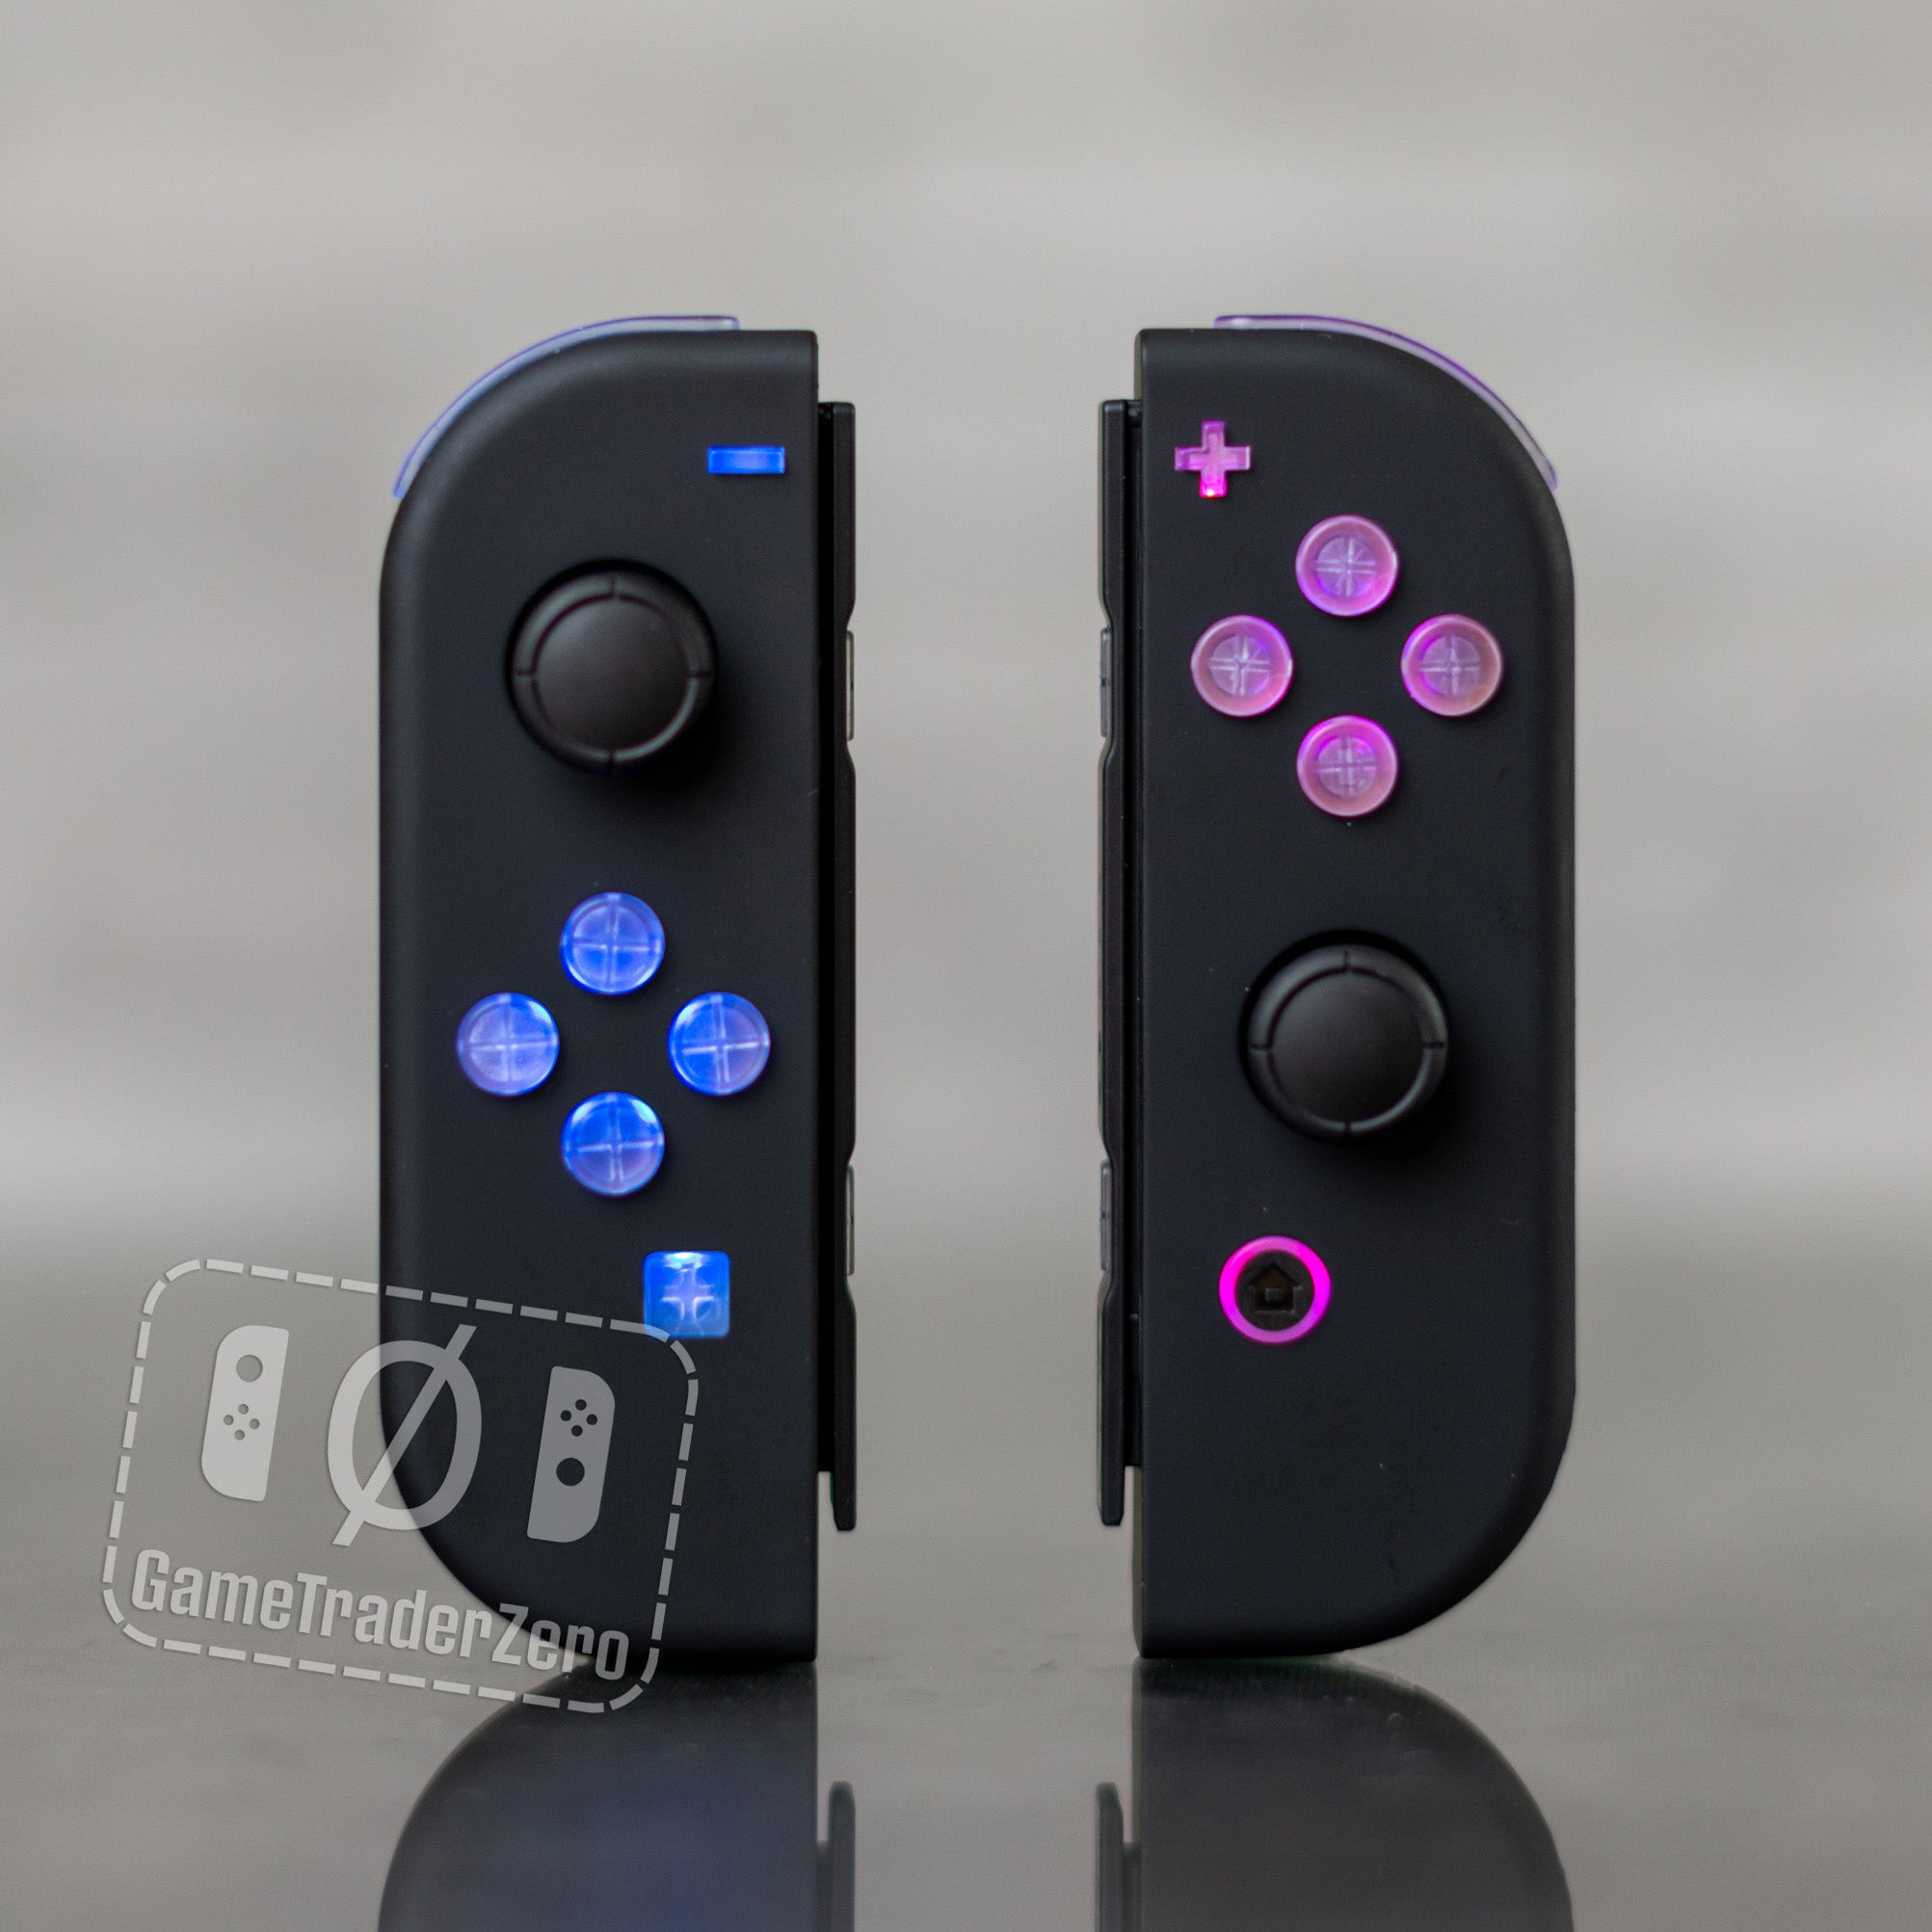 Custom Nintendo Joy-Con Controllers Black MOD Backlit Butto – GameTraderZero